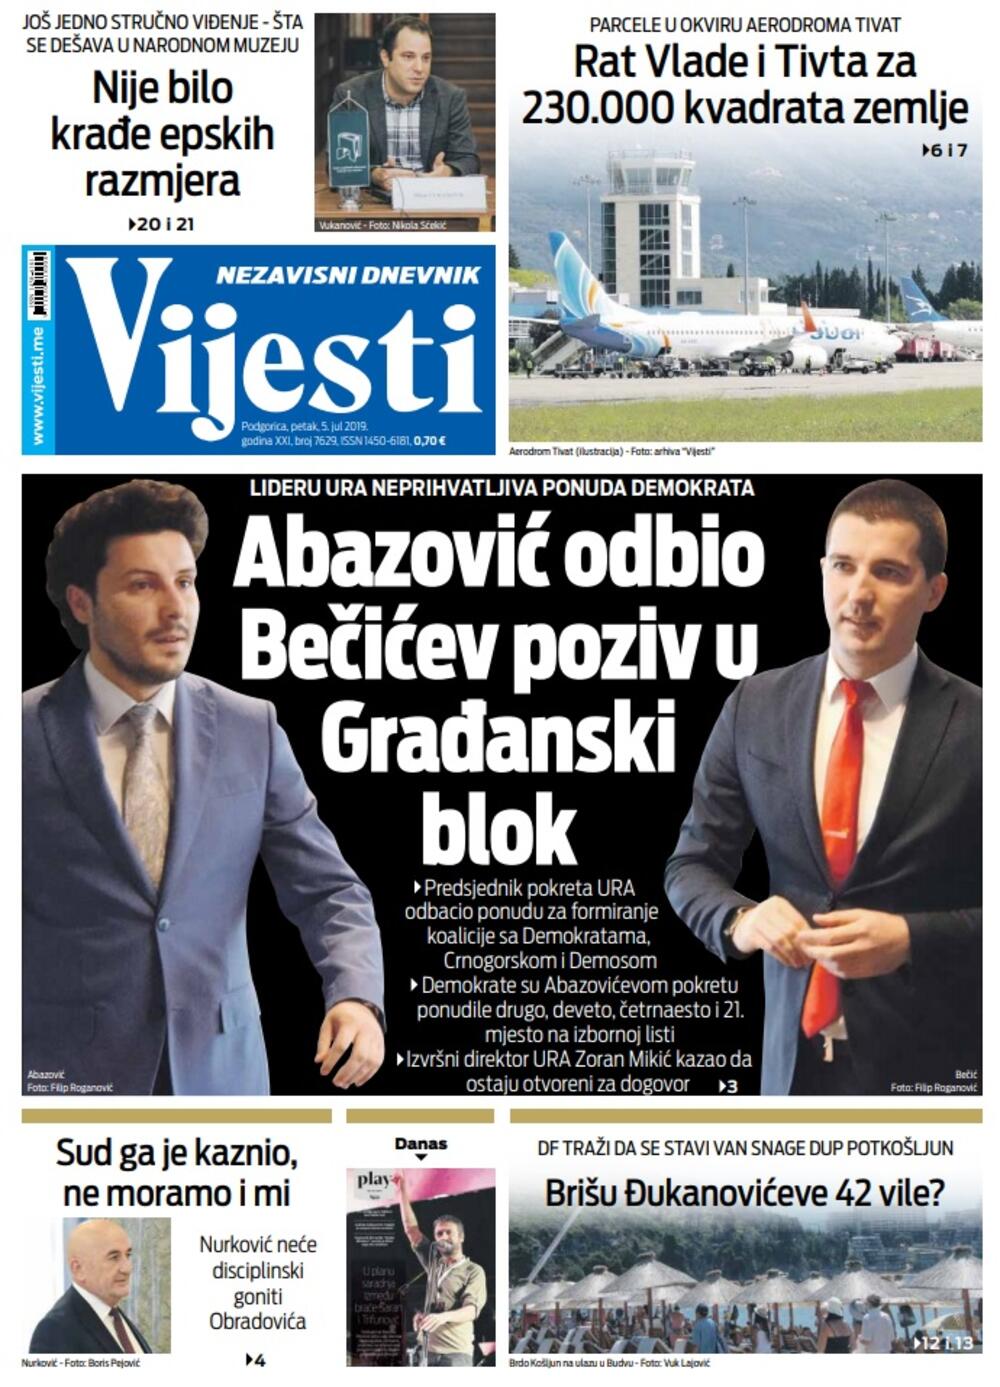 Naslovna strana "Vijesti" za 5. jul, Foto: Vijesti